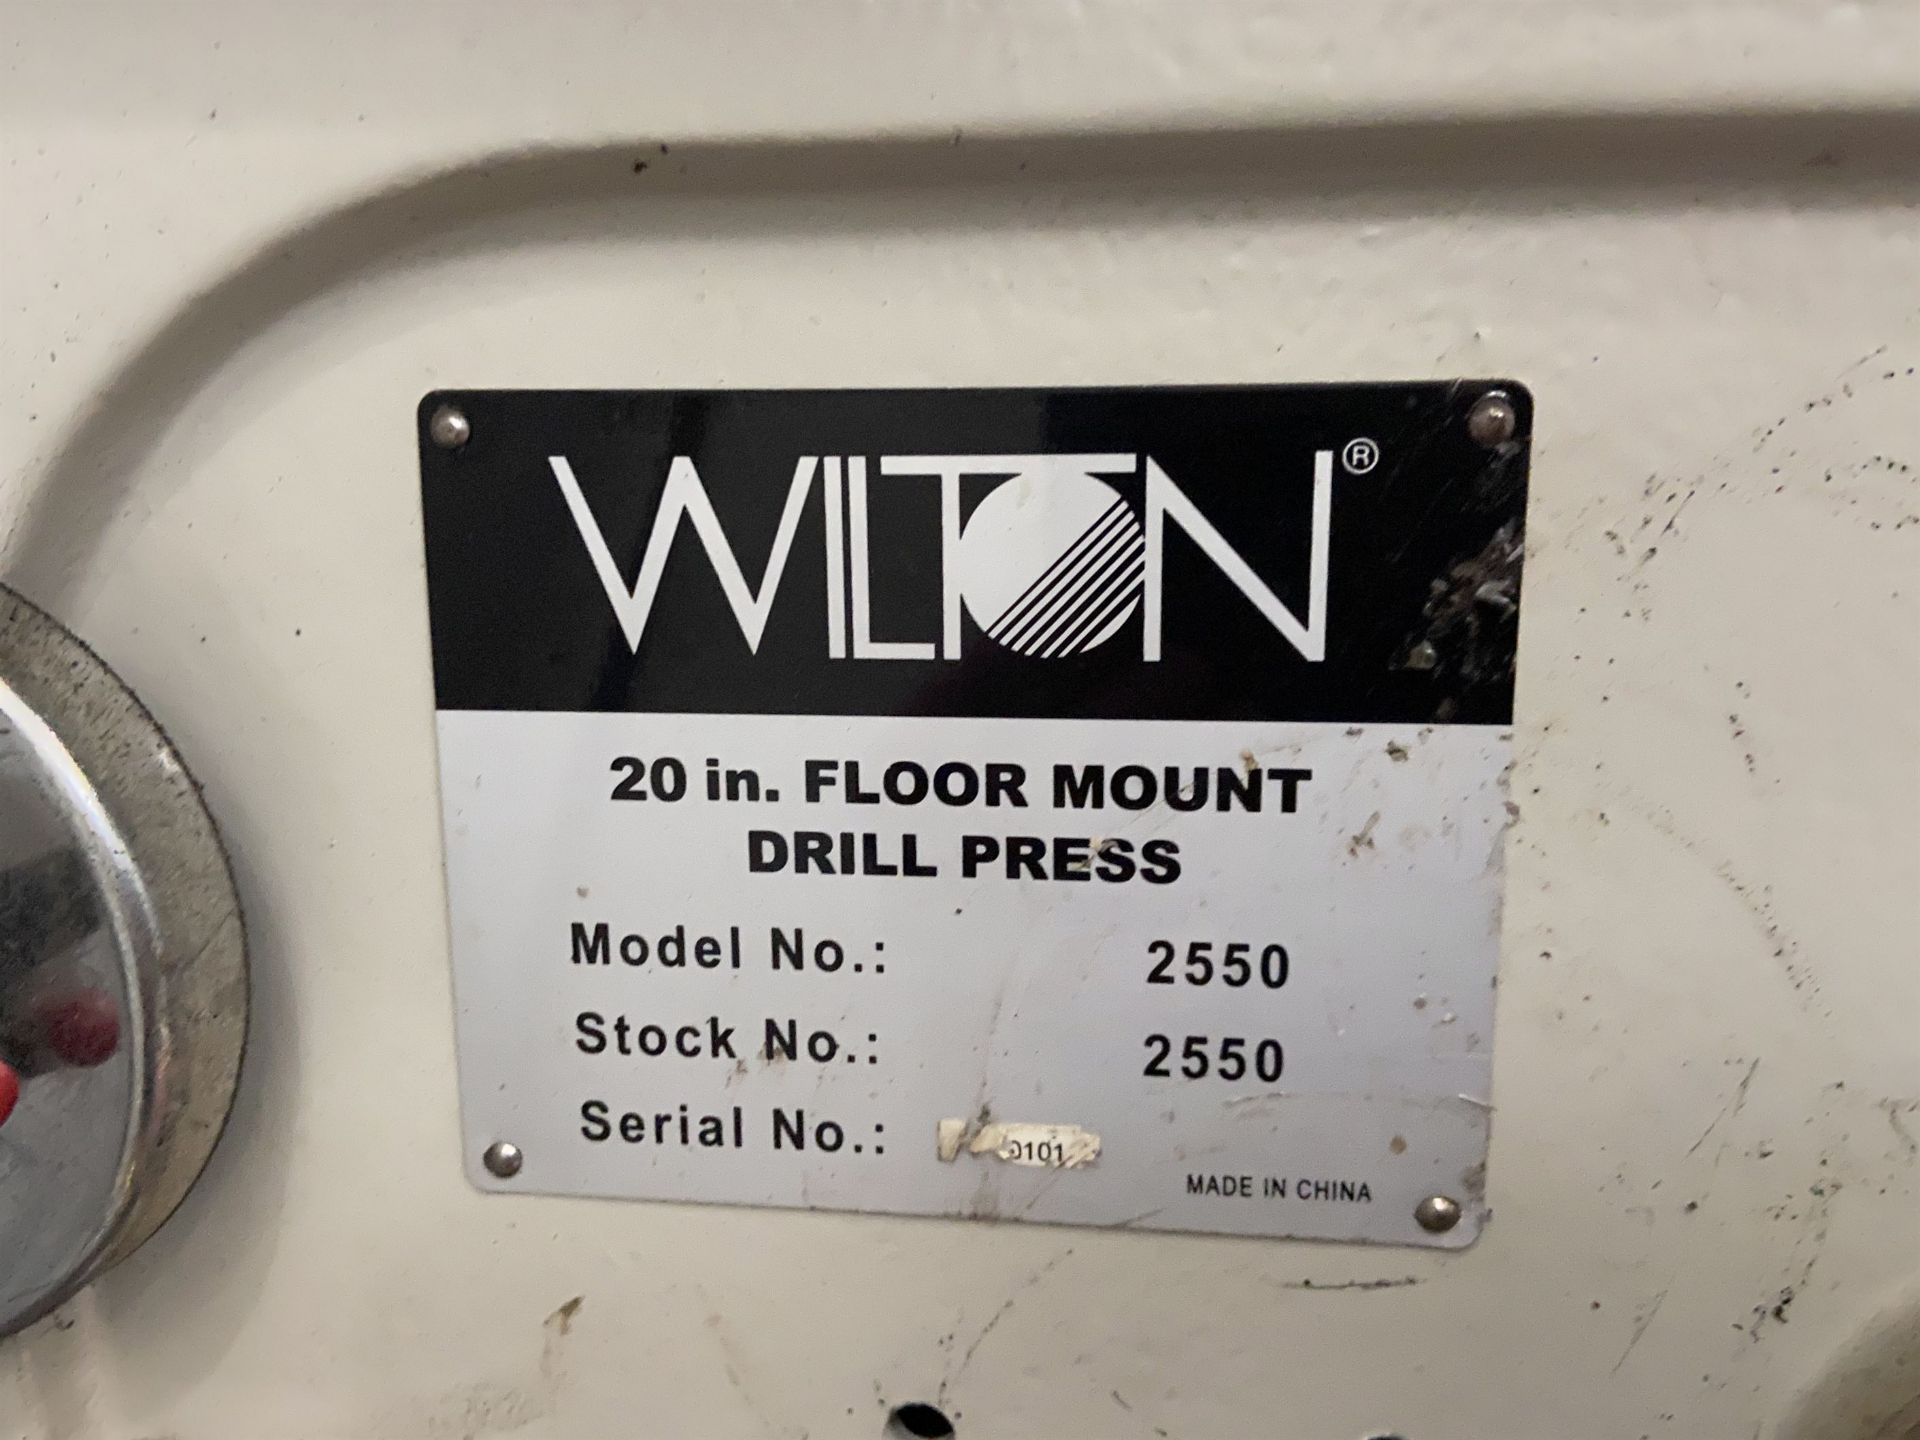 Wilton No 2550 Drill Press - Image 2 of 3